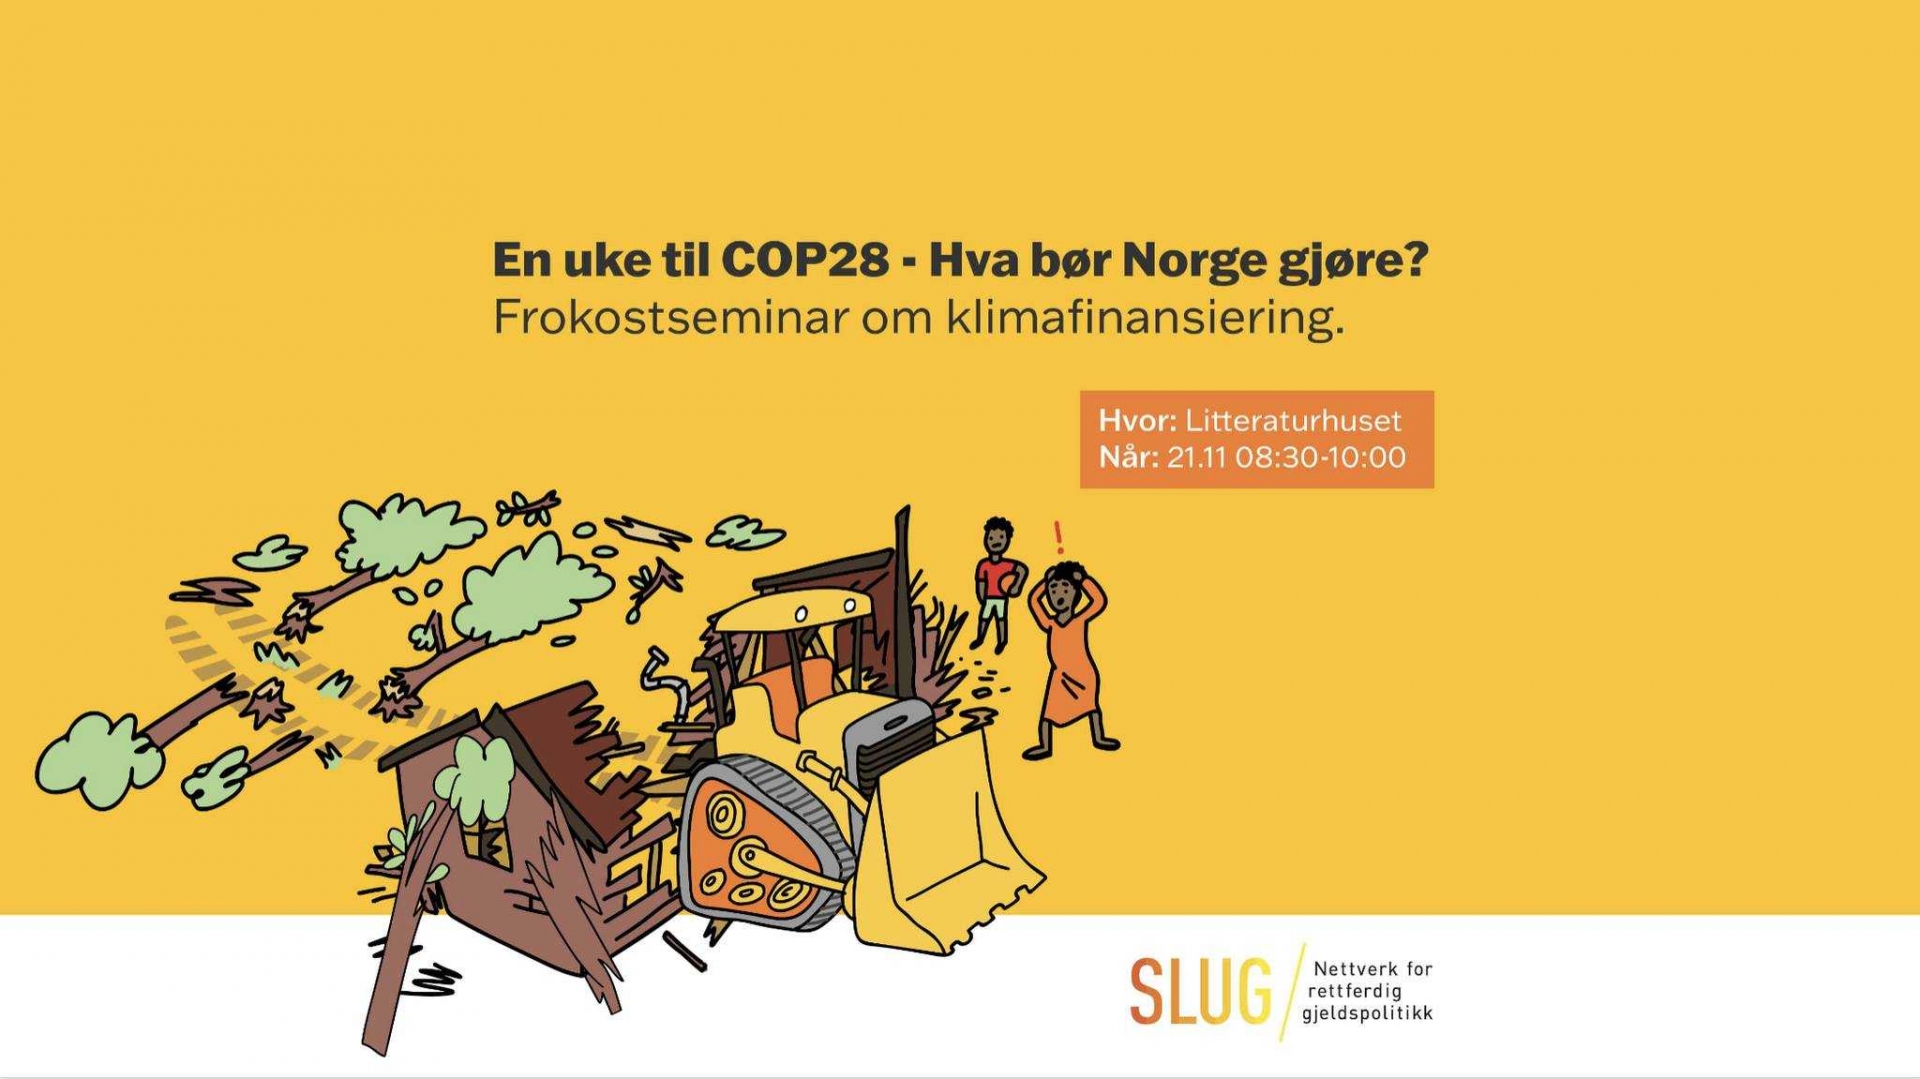 En uke til COP28 - Hva bør Norge gjøre? Frokostseminar om klimafinansiering